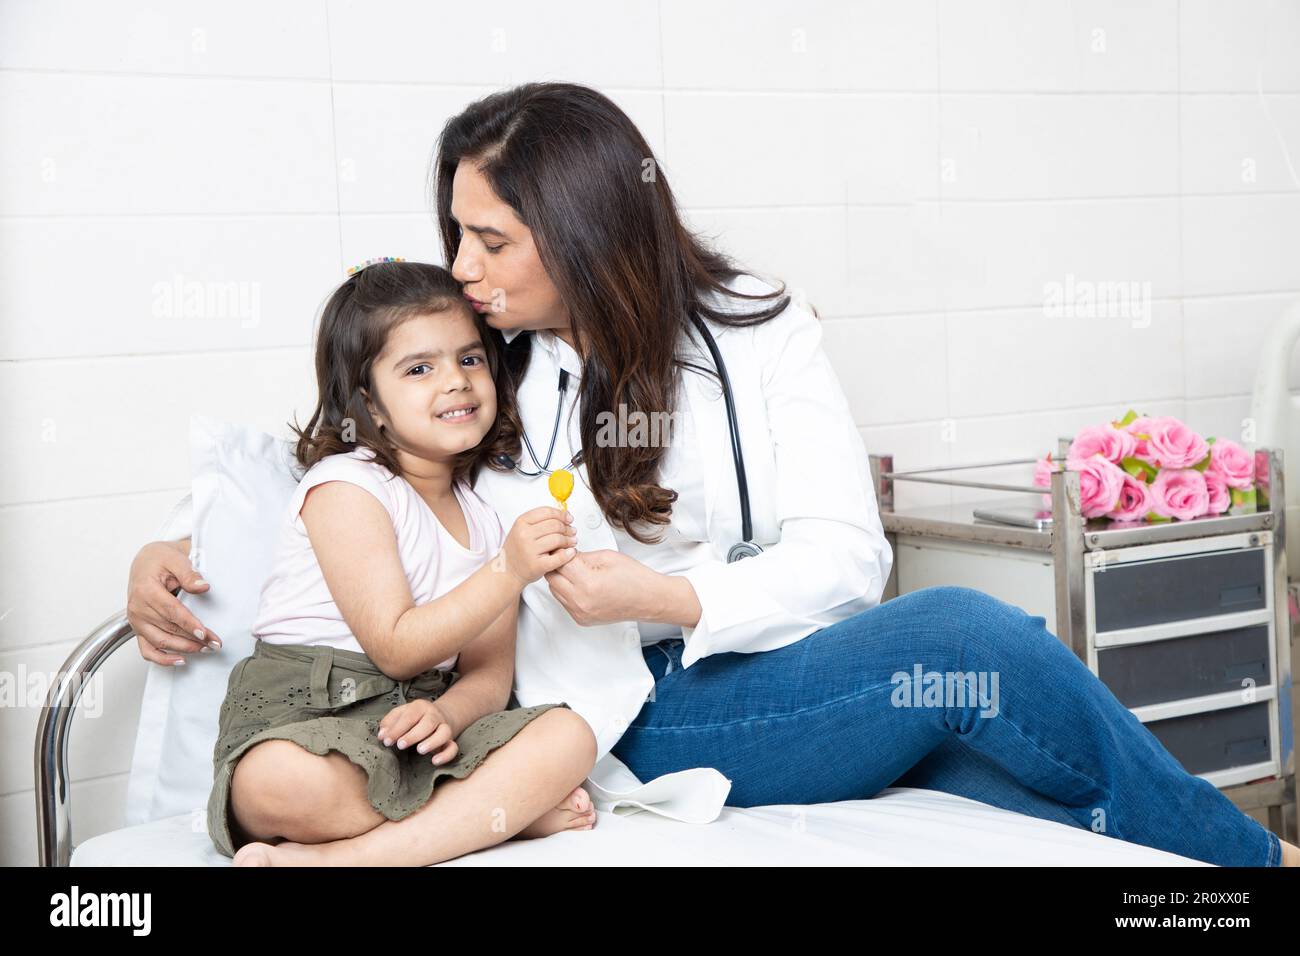 Felice bambina indiana ottenere lollipop da medico femminile a riunione in ospedale. Paziente bambino sorridente che festeggia il successo del trattamento con ge Foto Stock